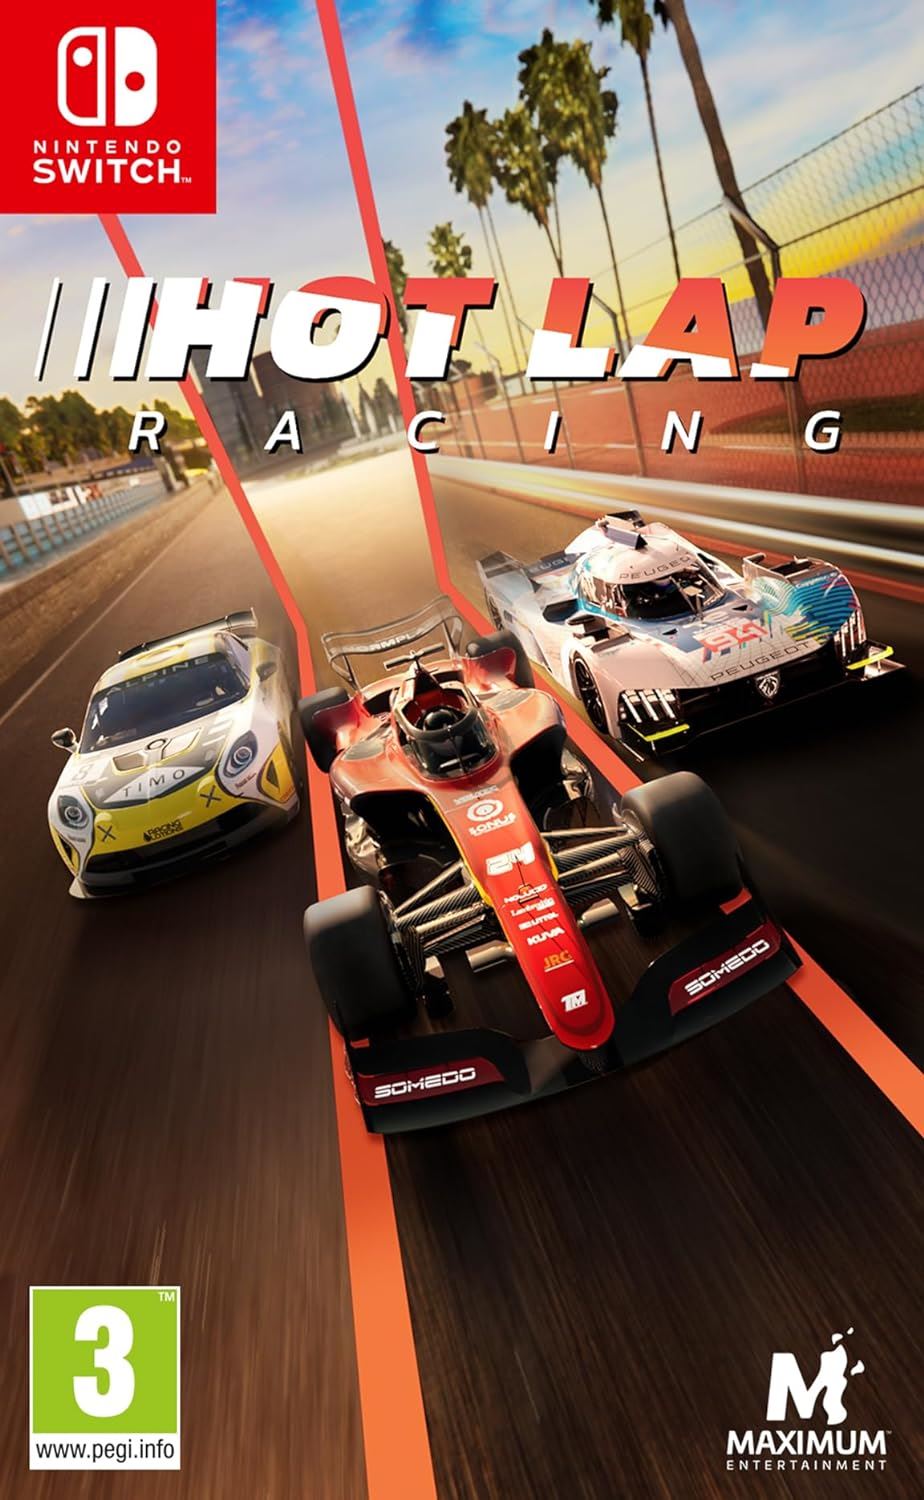 Hot Lap Racing Nintendo Switch Game